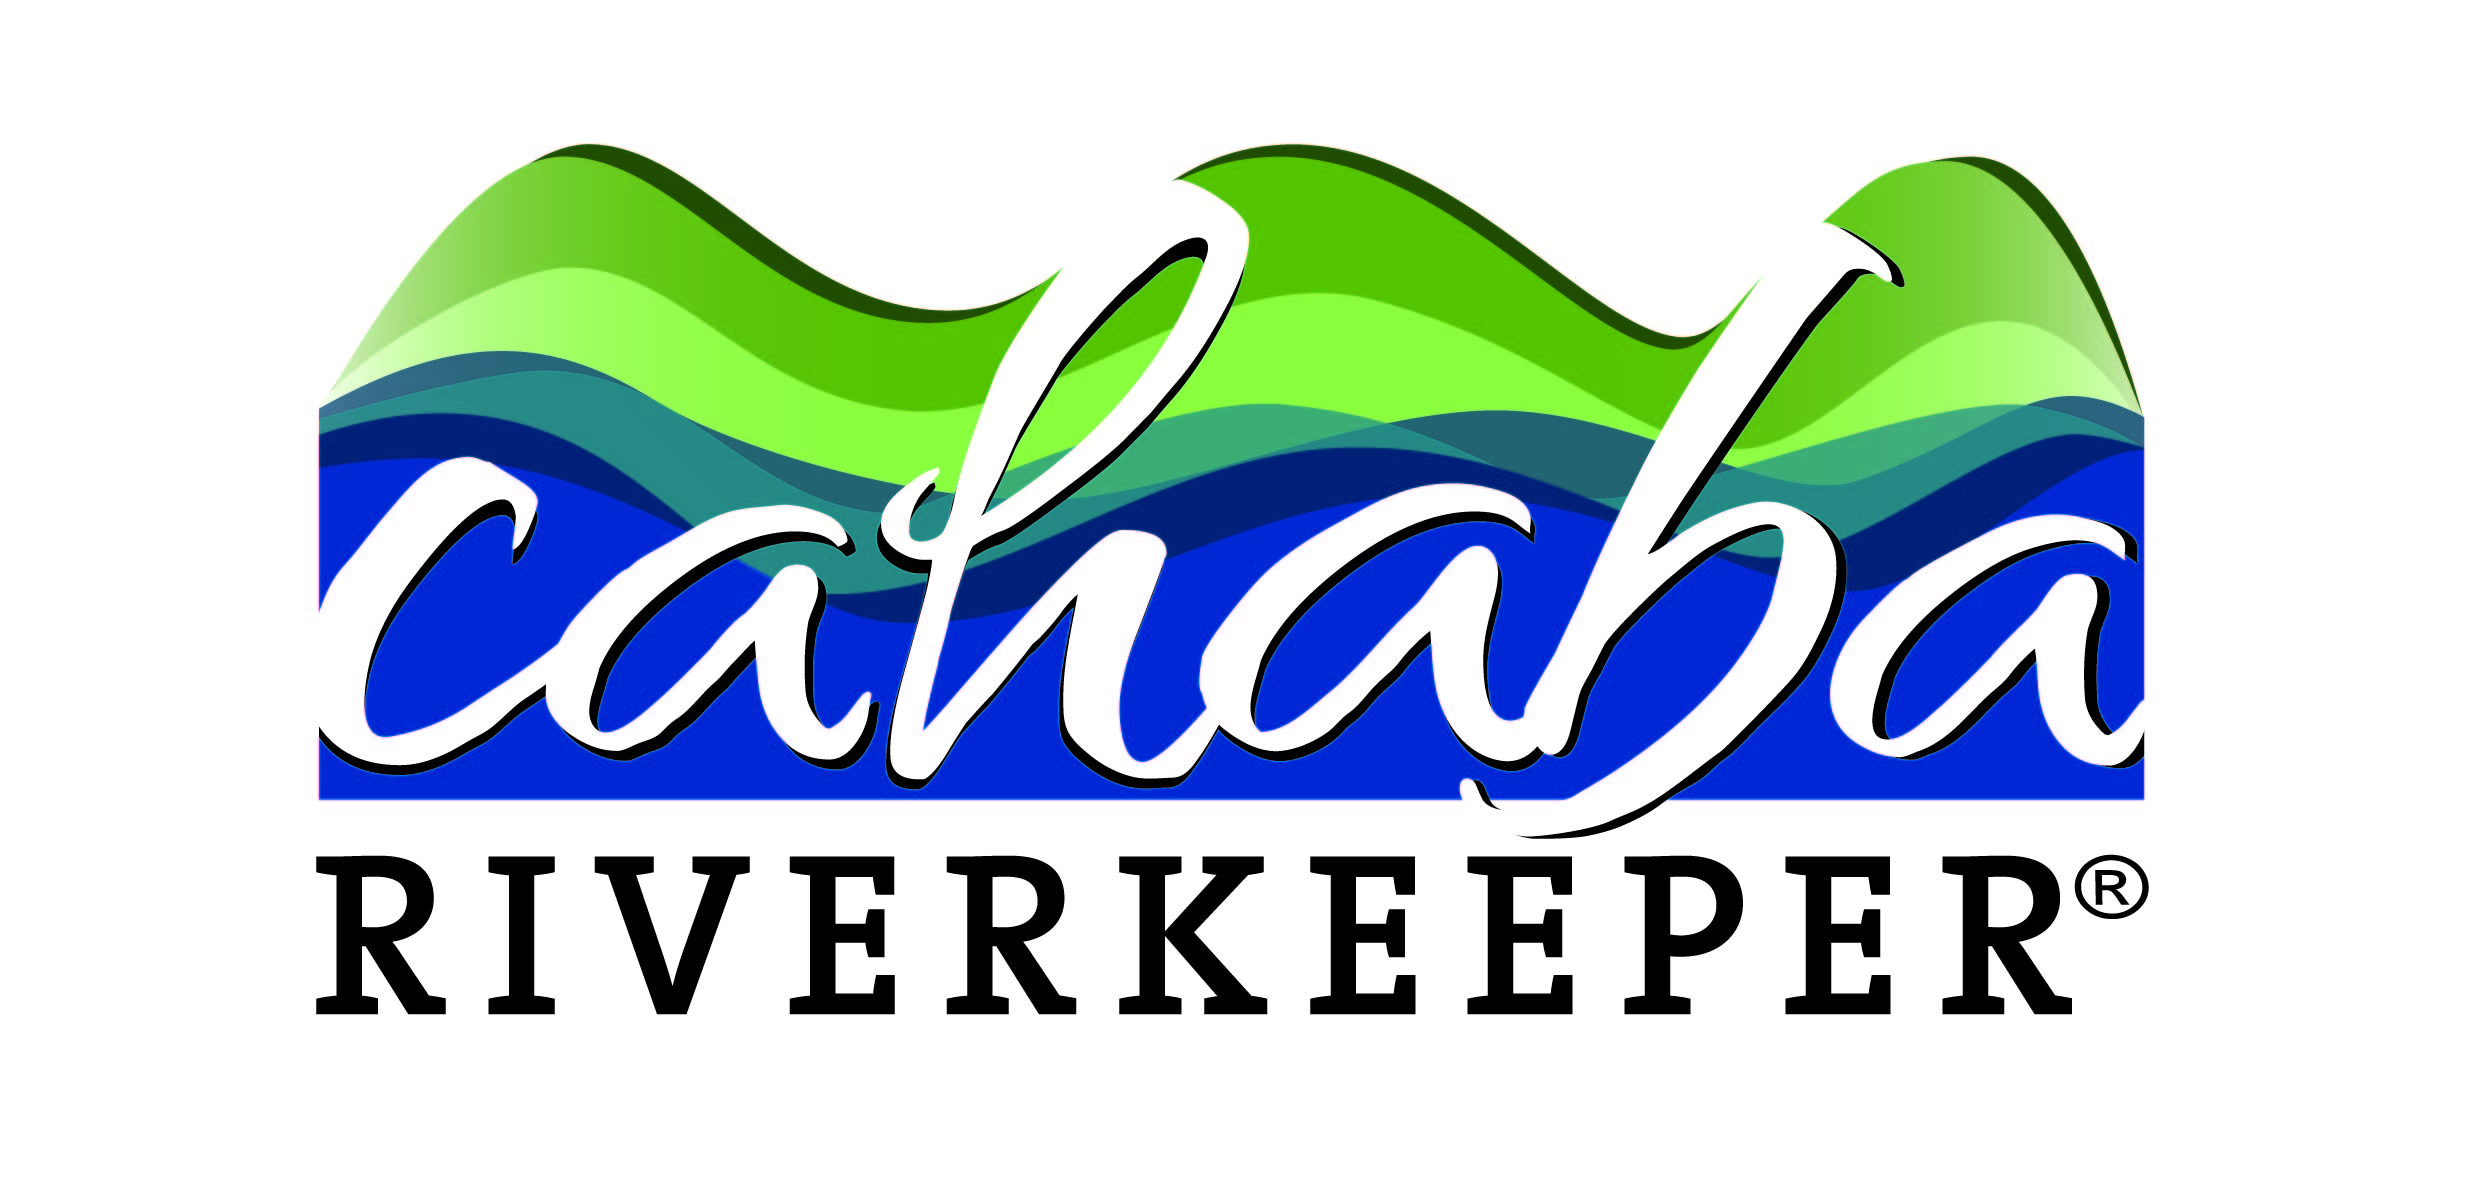 Cahaba Riverkeeper